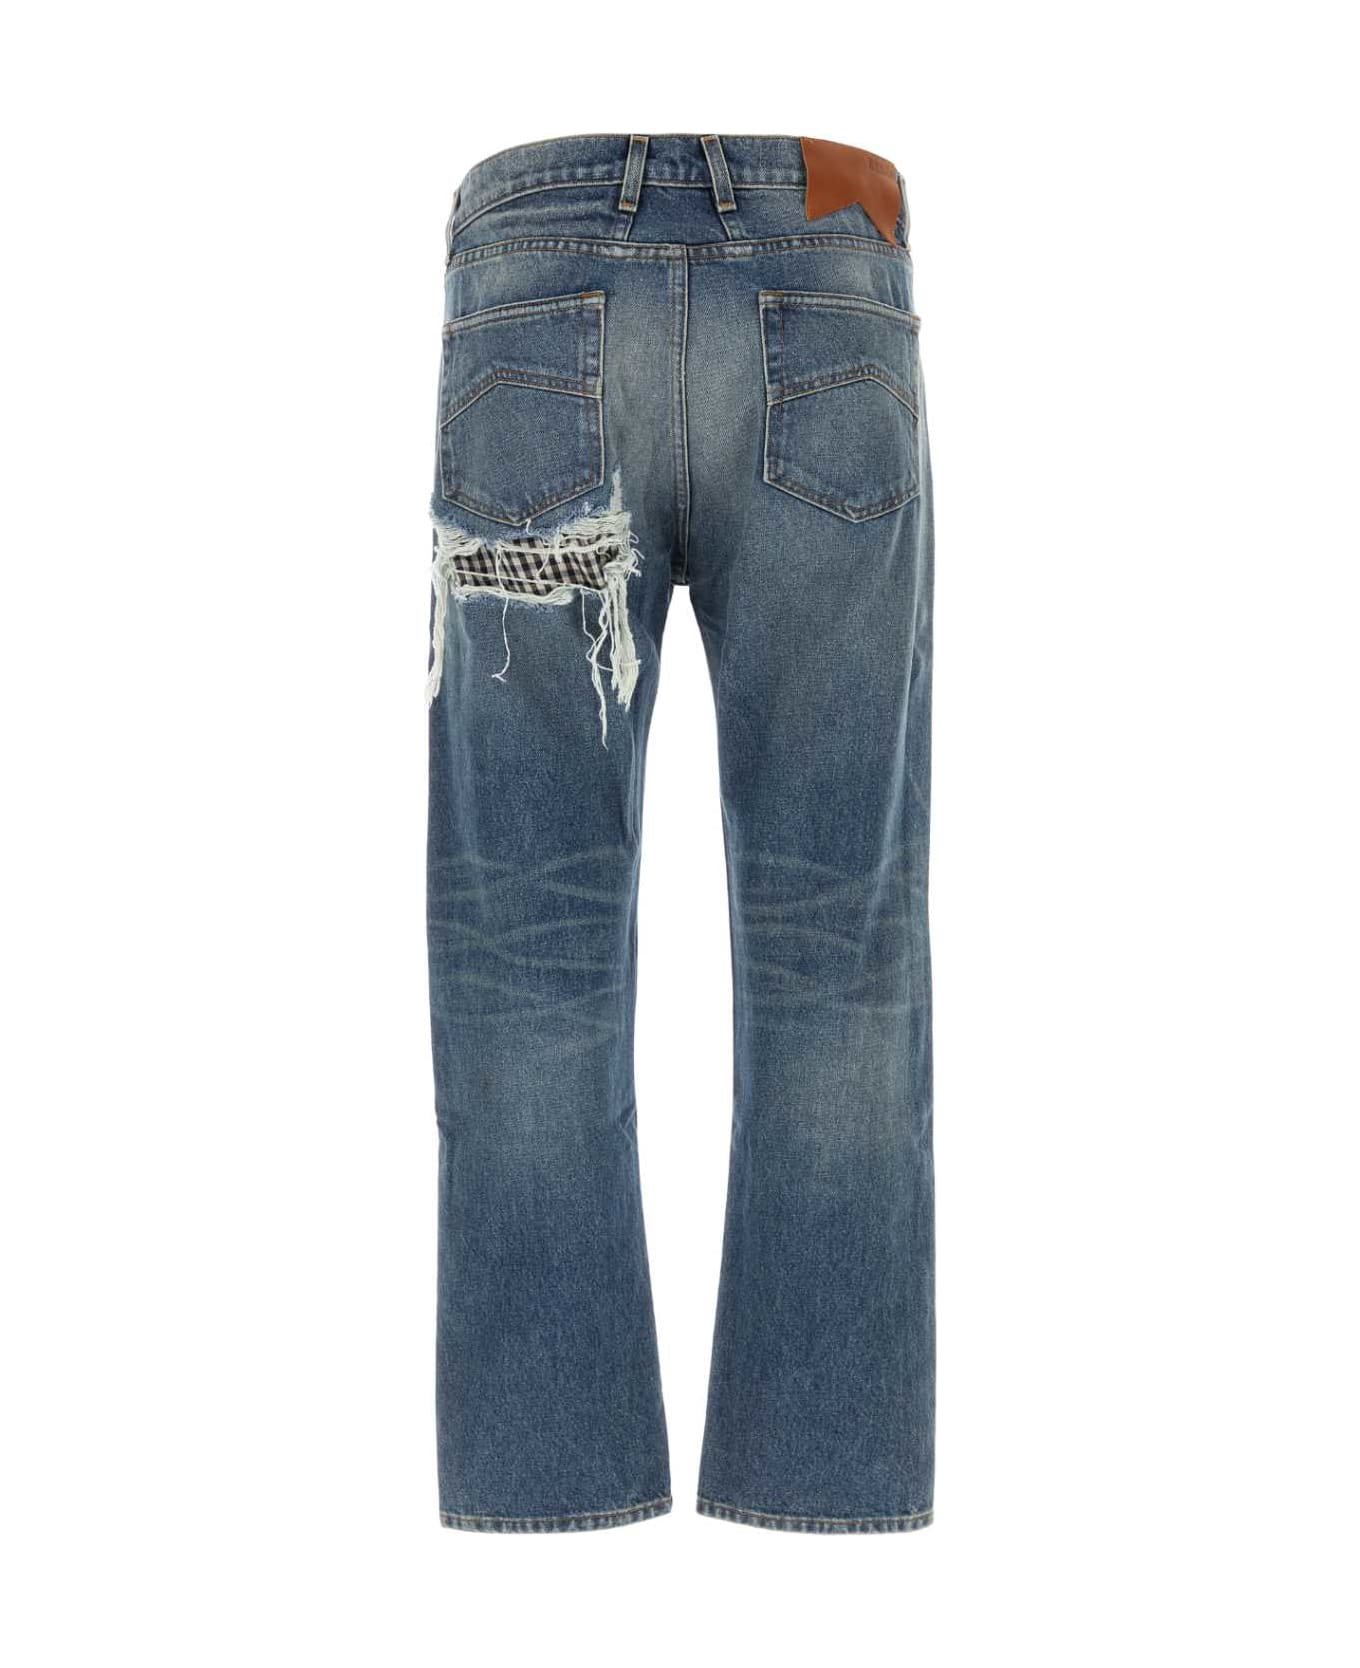 Rhude Denim Jeans - INDIGO